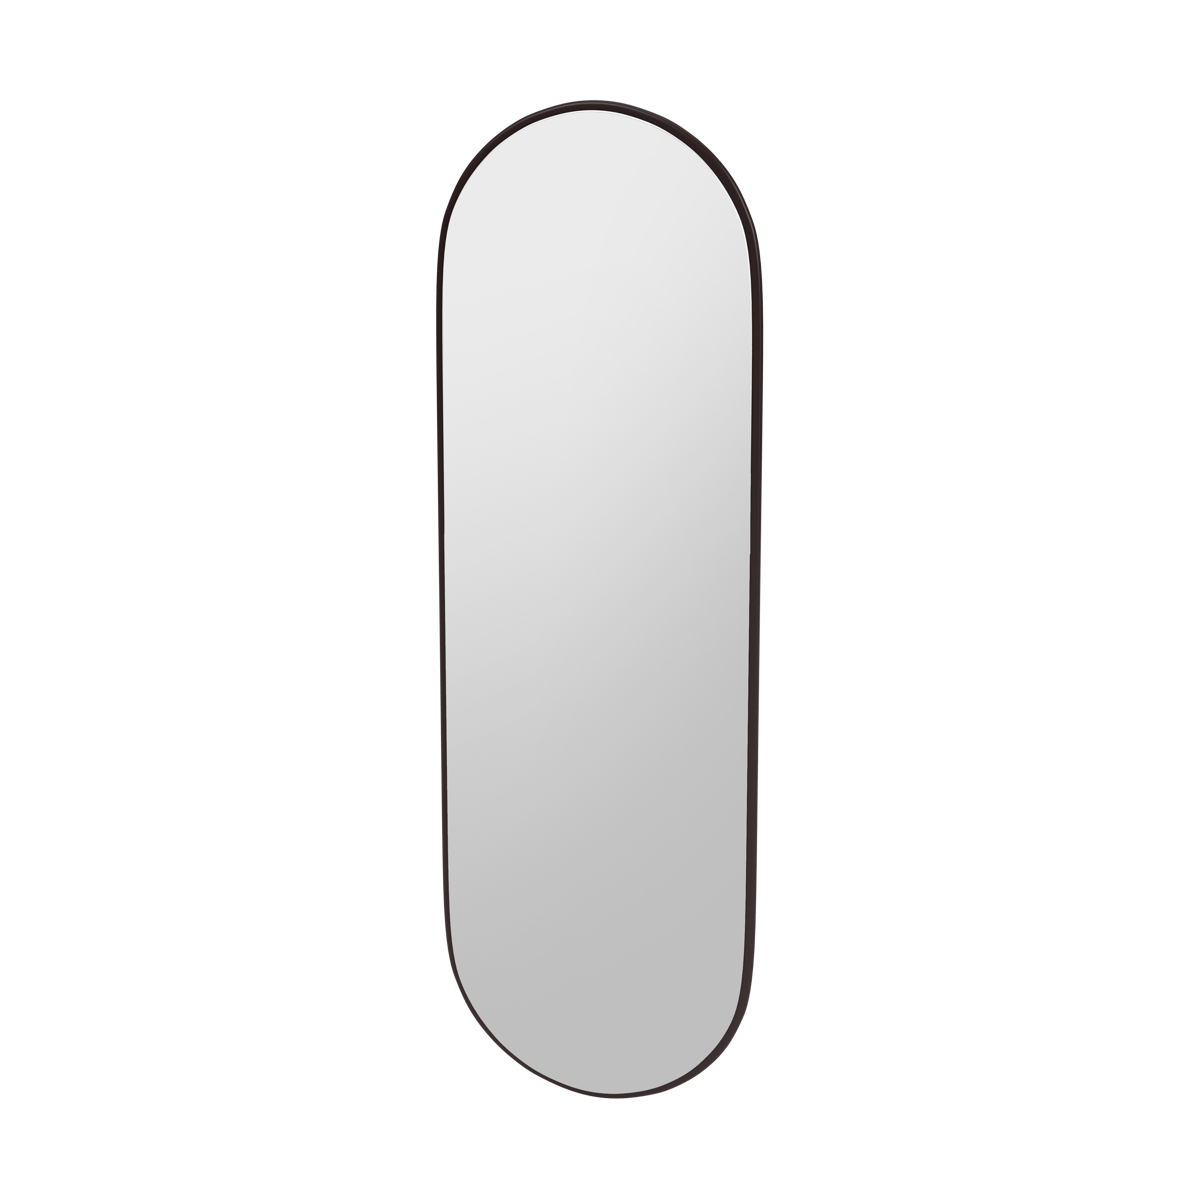 Montana FIGUUR Mirror Spiegel - SP824R Balsamic